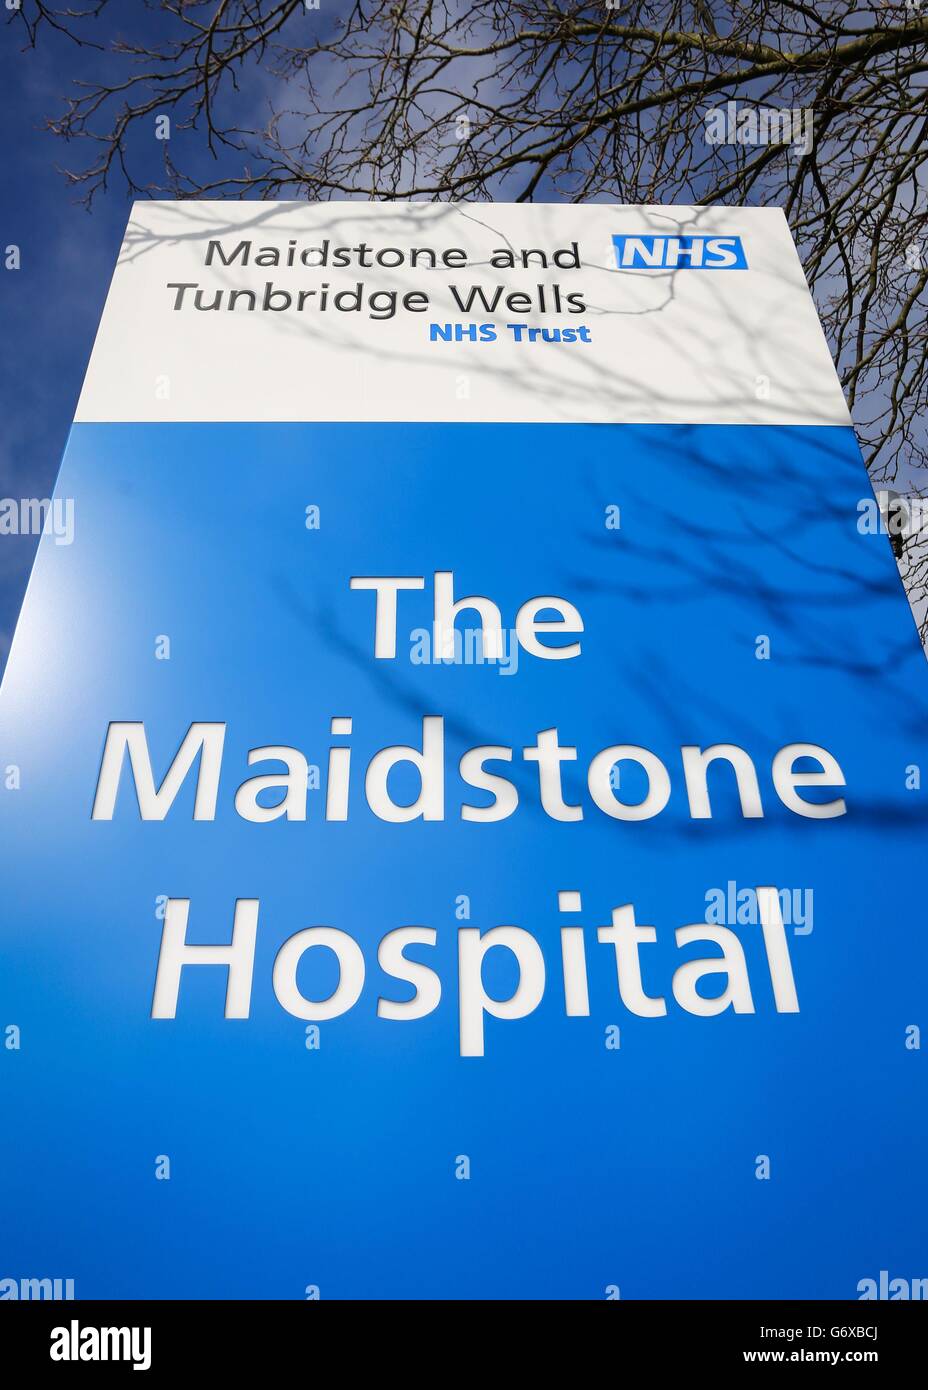 Il cartello all'esterno dell'ospedale Maidstone di Kent, dove cinque pazienti affetti da cancro sono morti a seguito di interventi chirurgici gastrointestinali superiori (GI). Foto Stock